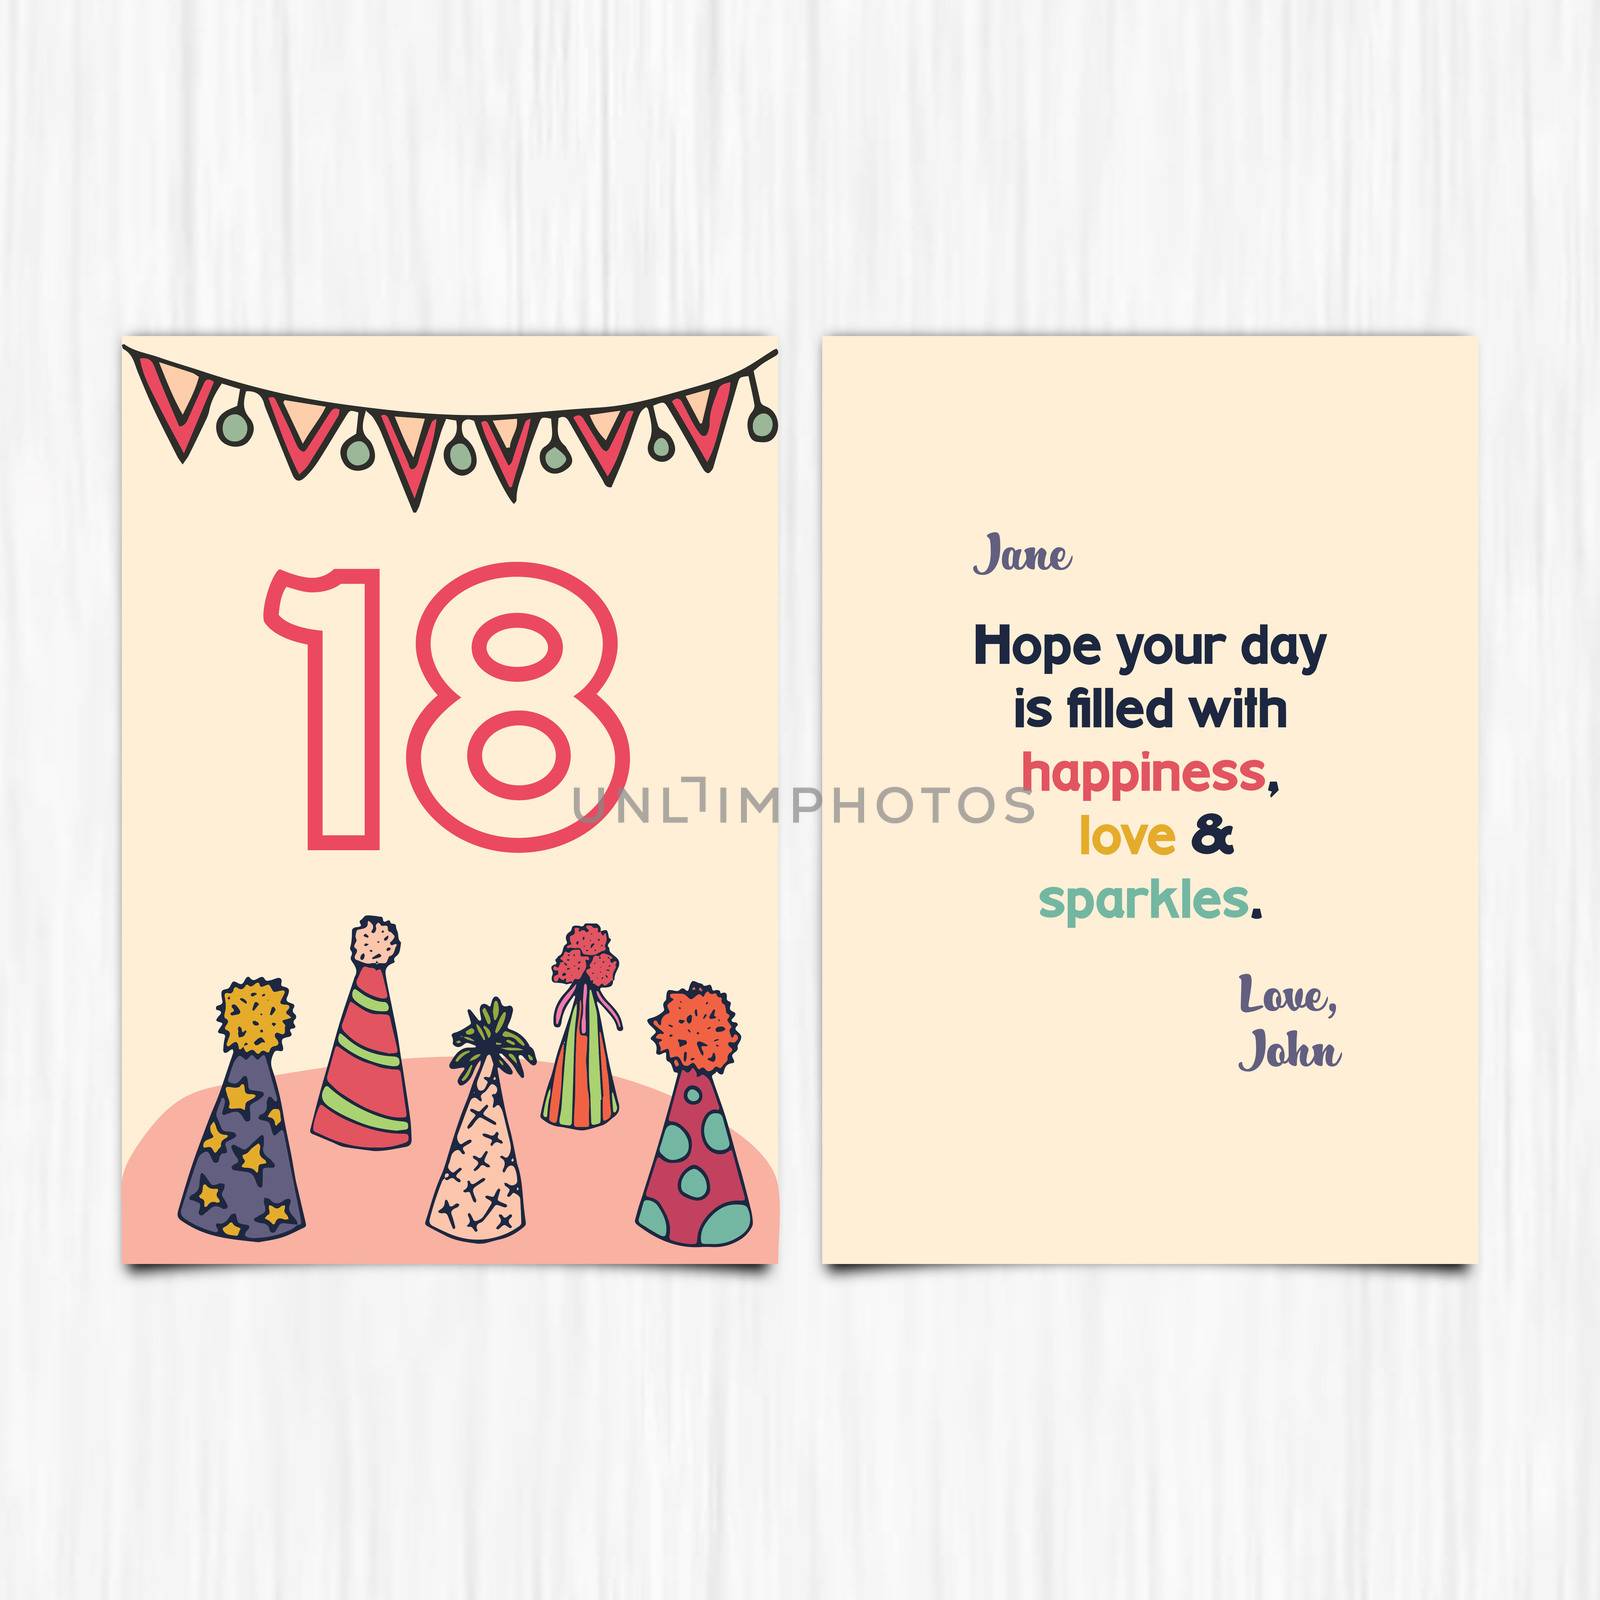 Happy birthday 18th years greeting card by Wavebreakmedia